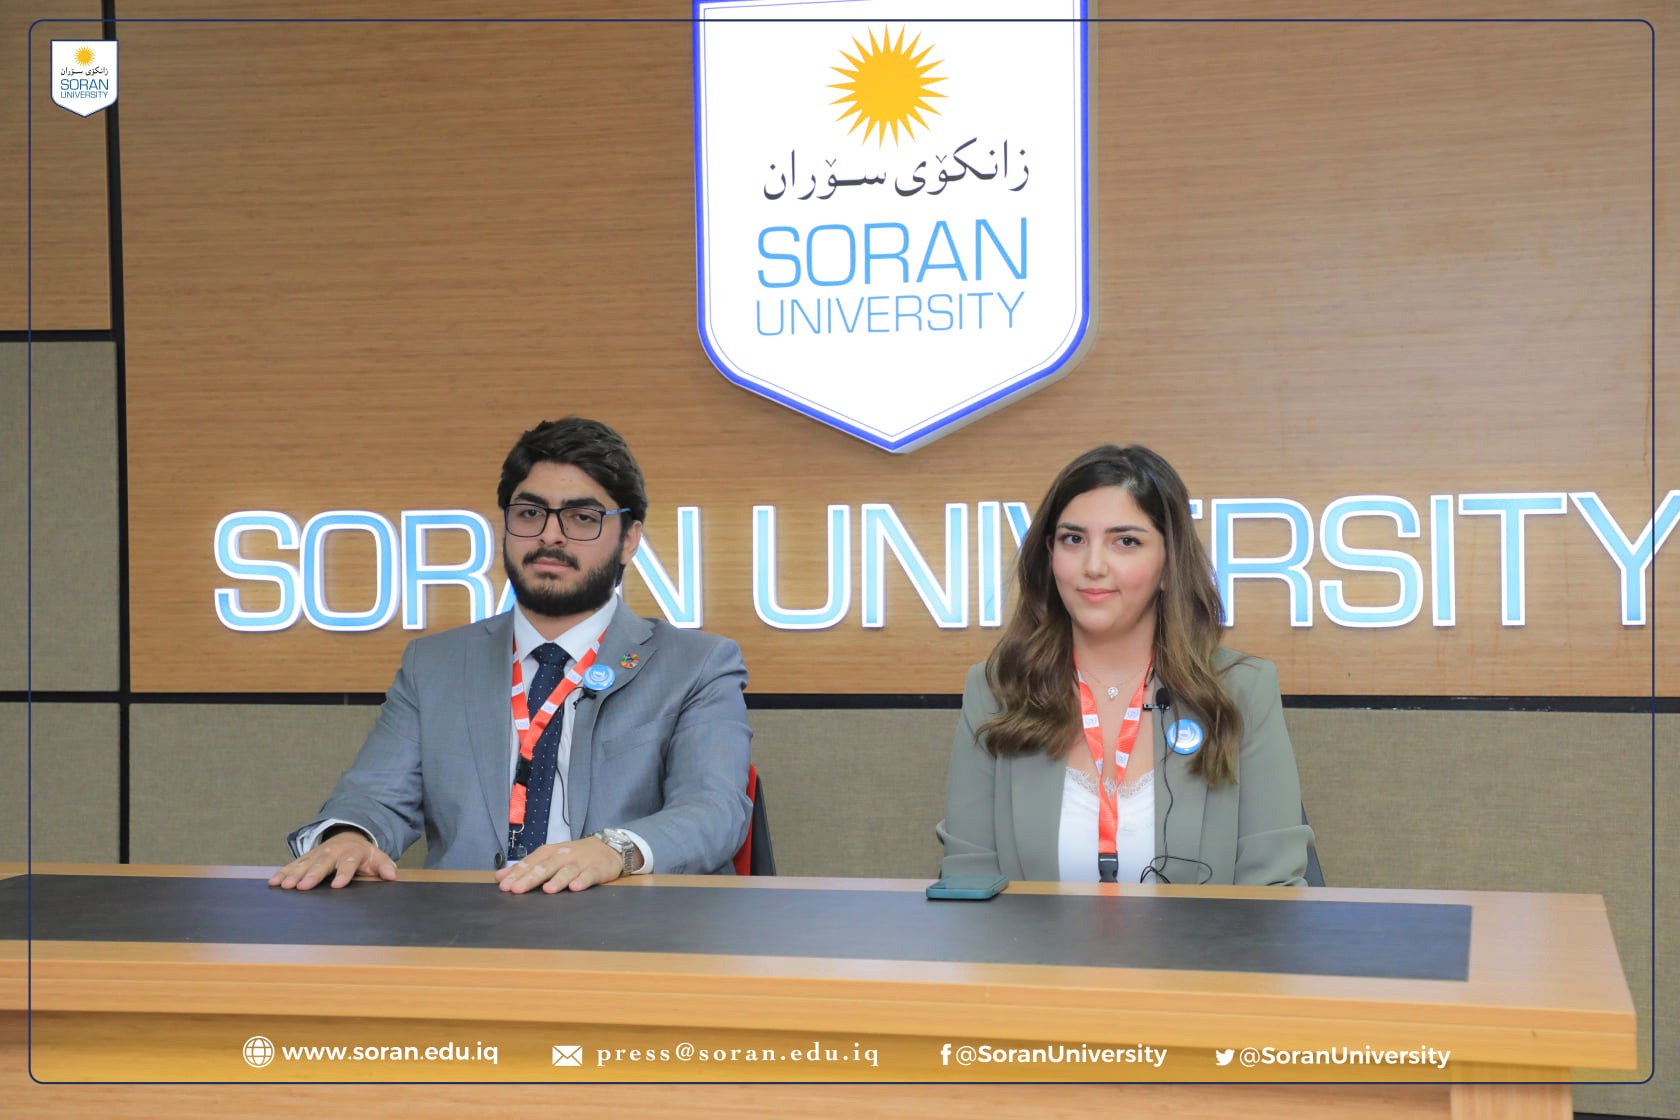 على مدار ثلاثة أيام؛ جامعة سوران تعقد بنجاح أول مؤتمر لنموذج محاكاة الامم المتحدة